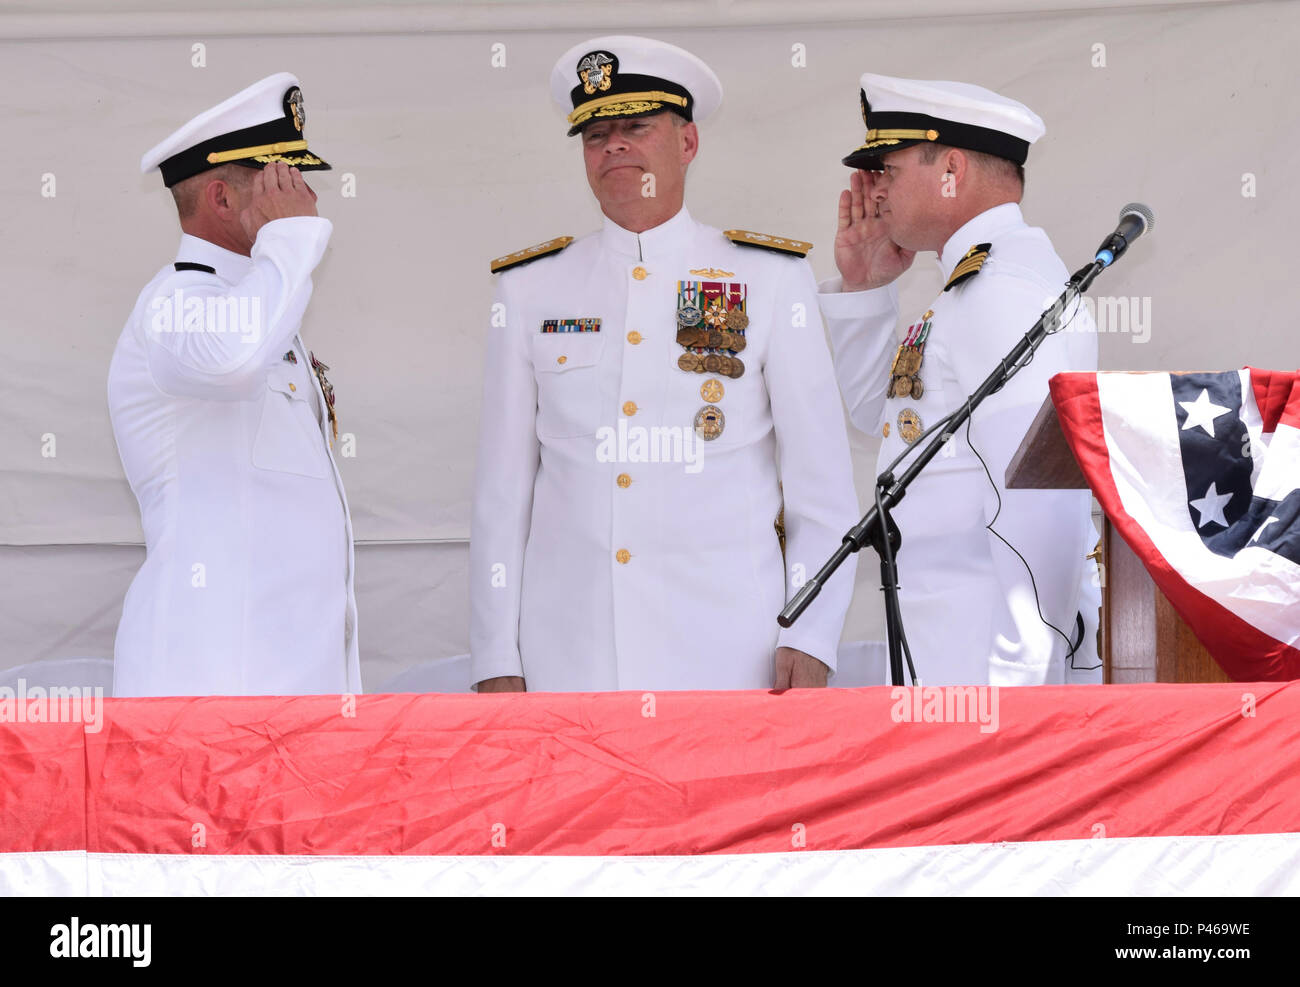 SANTA RITA, Guam (20 giugno 2016) - Capt. David G. Schappert, destra, allevia Capt. Jeffrey M. Grimes, sinistra, come il comandante della Squadriglia Sommergibili 15 (COMSUBRON 15) mentre Adm posteriore. Frederick J. Roegge, centro, sovrintende a. (U.S. Foto di Marina di Massa Specialista comunicazione marinaio Daniel Willoughby/RILASCIATO) Foto Stock